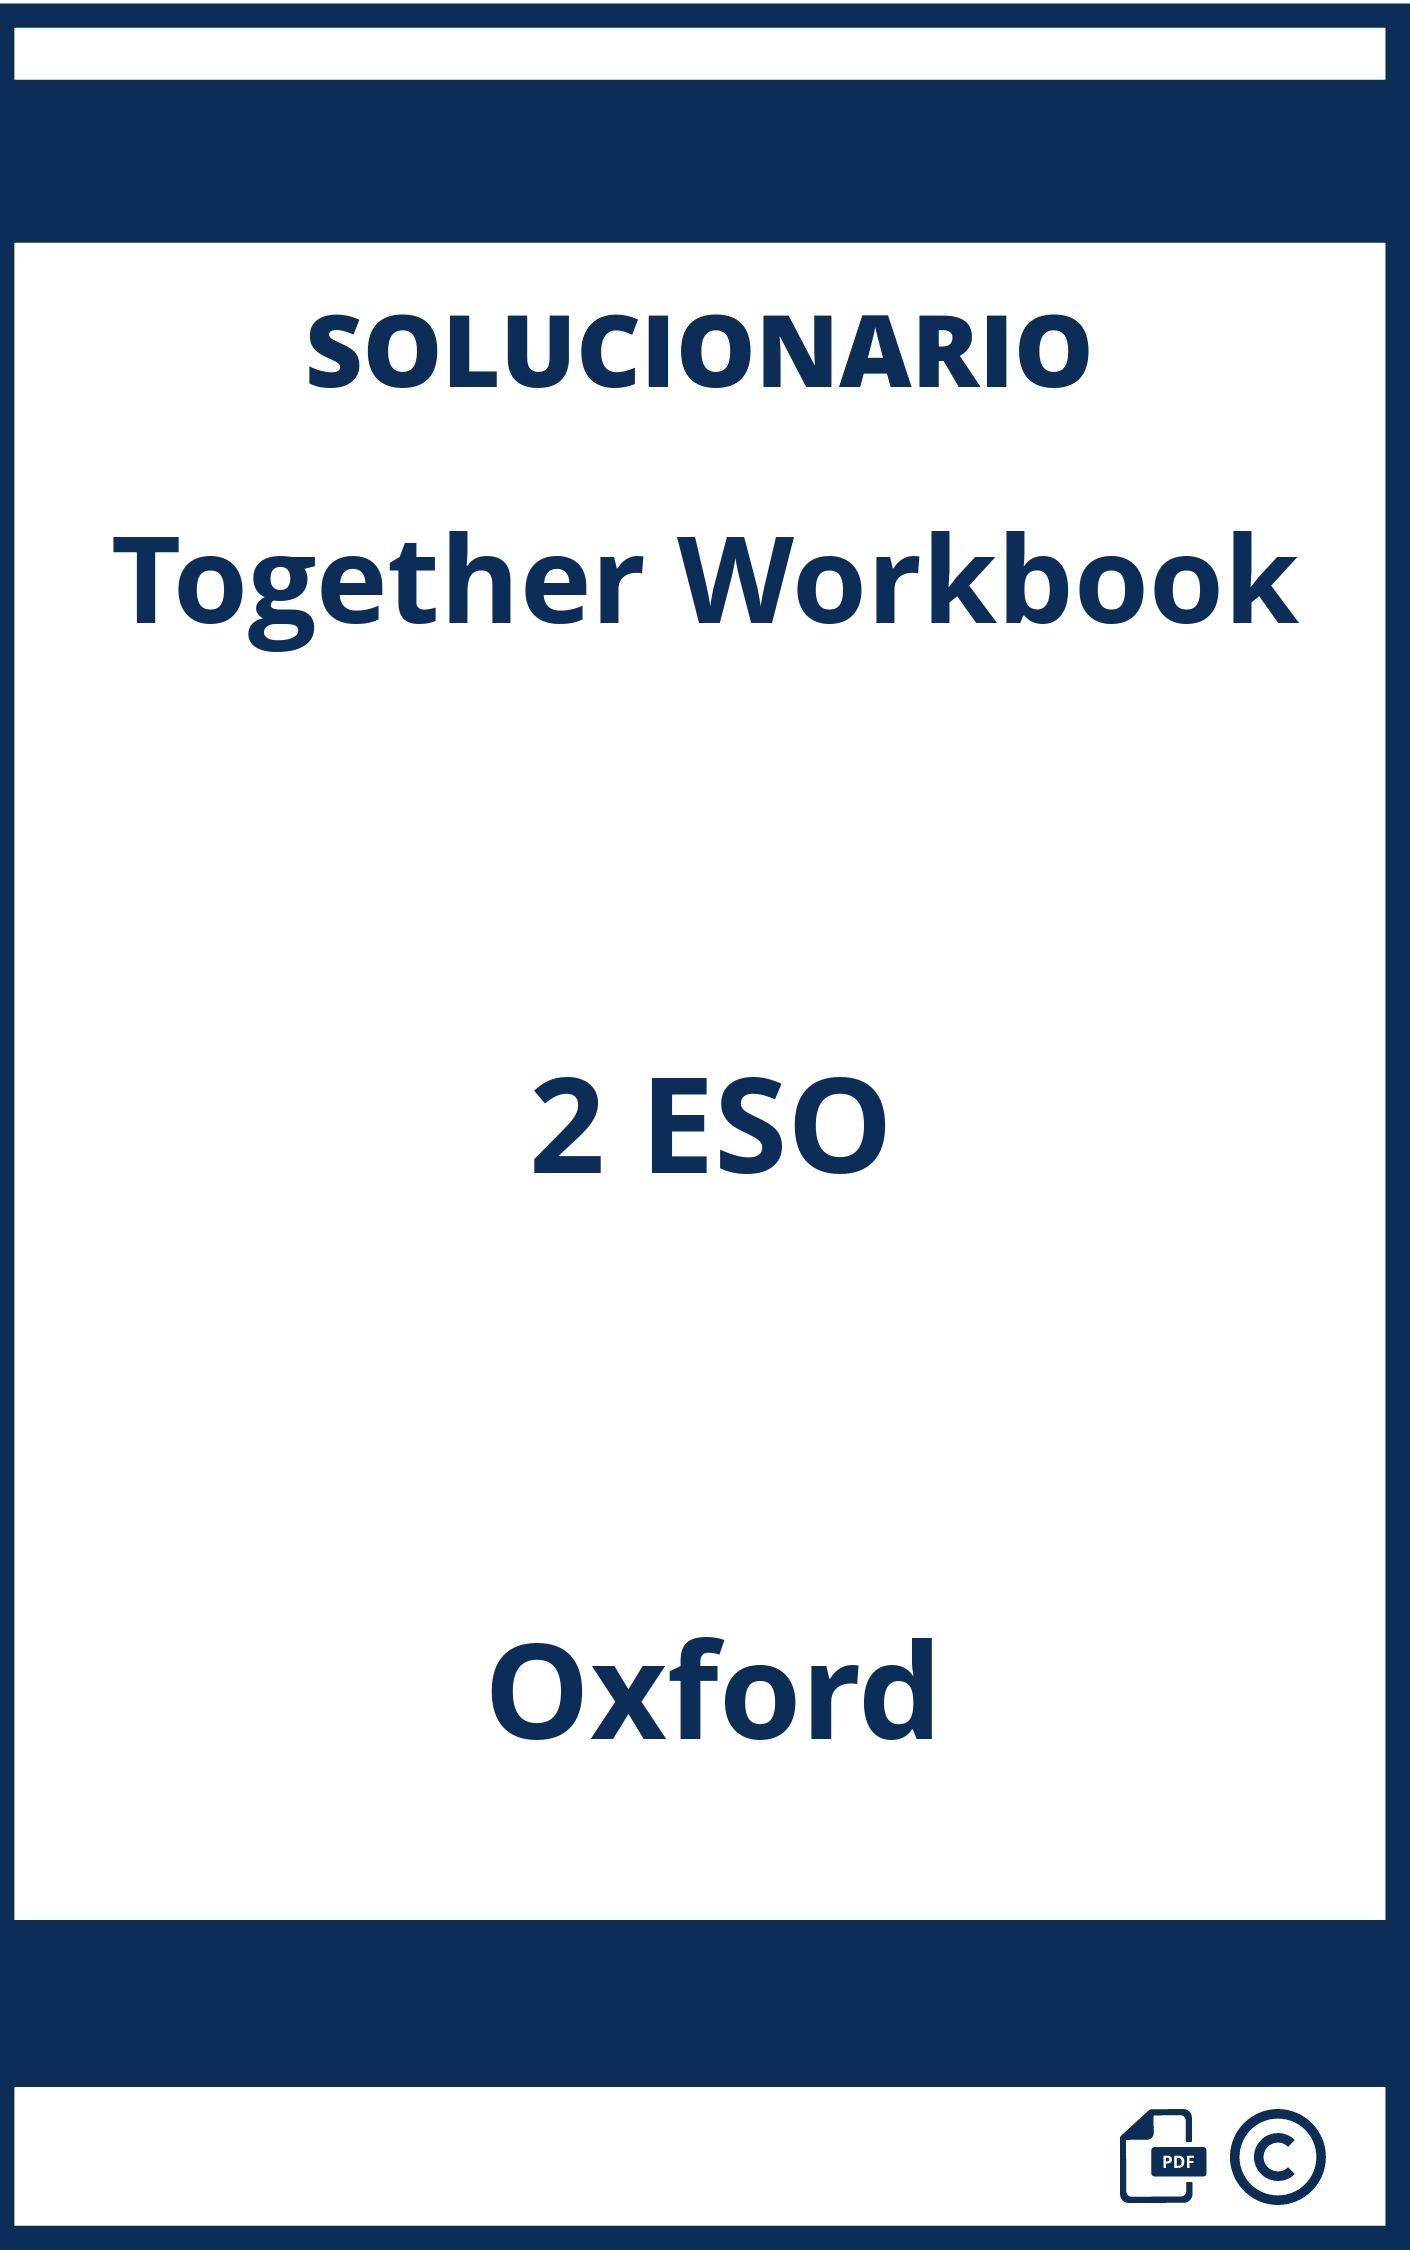 Solucionario Together Workbook 2 ESO Oxford